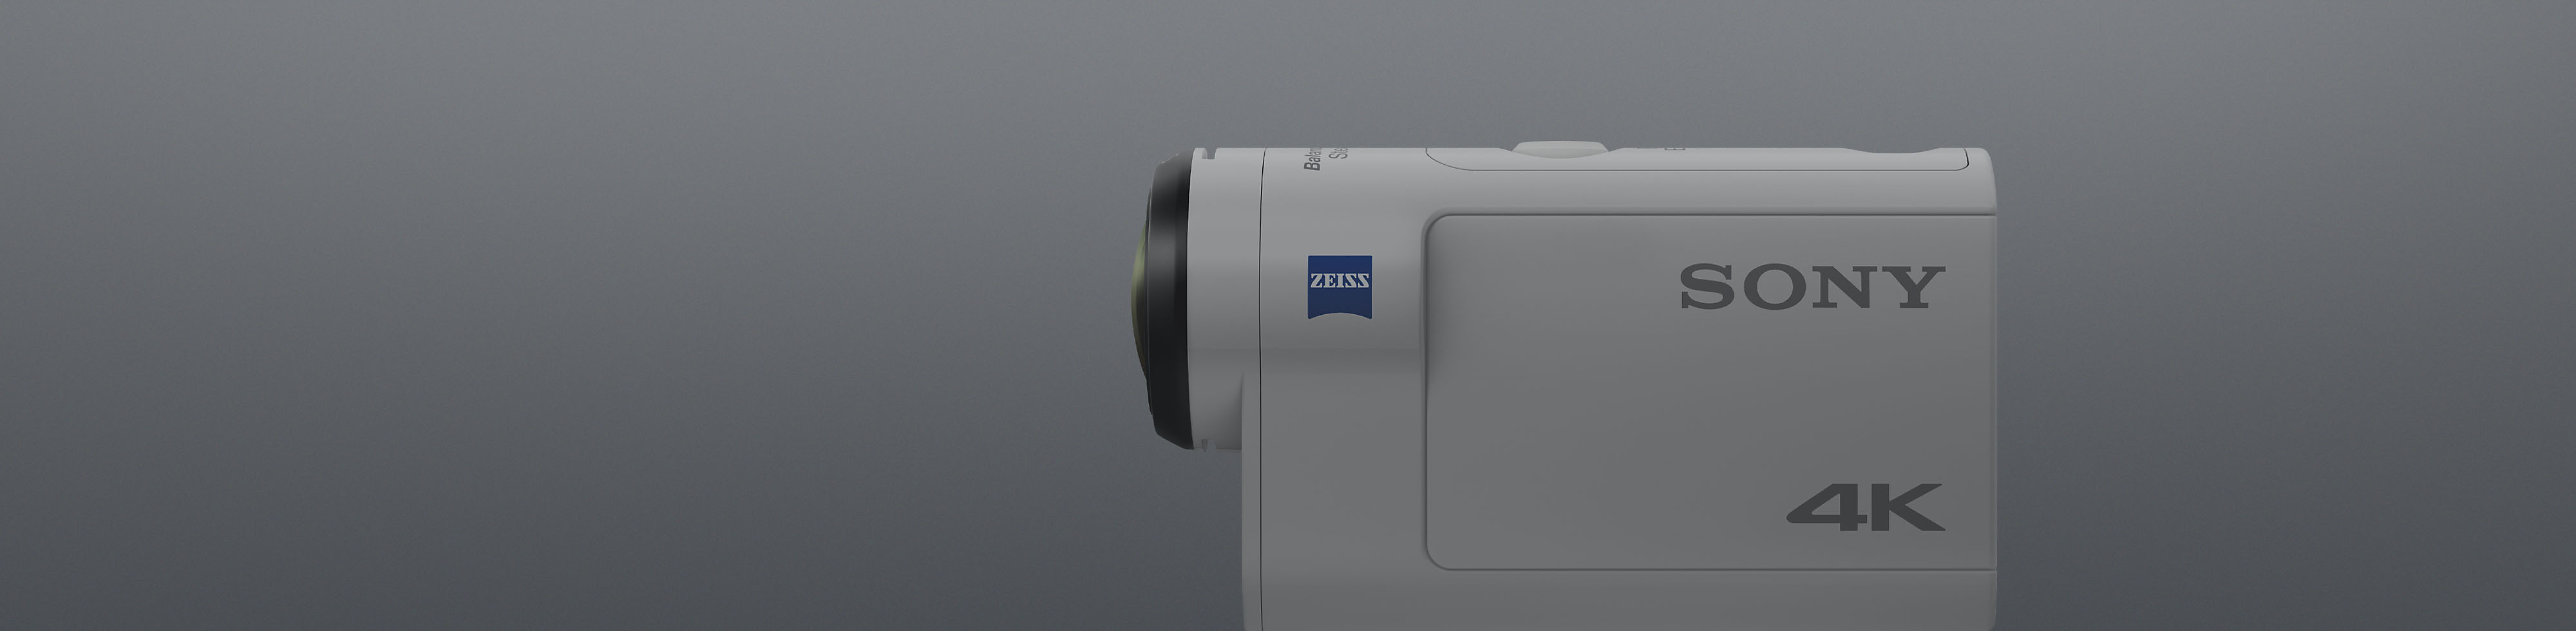 Pogled sa strane na beli Sony 4K action cam